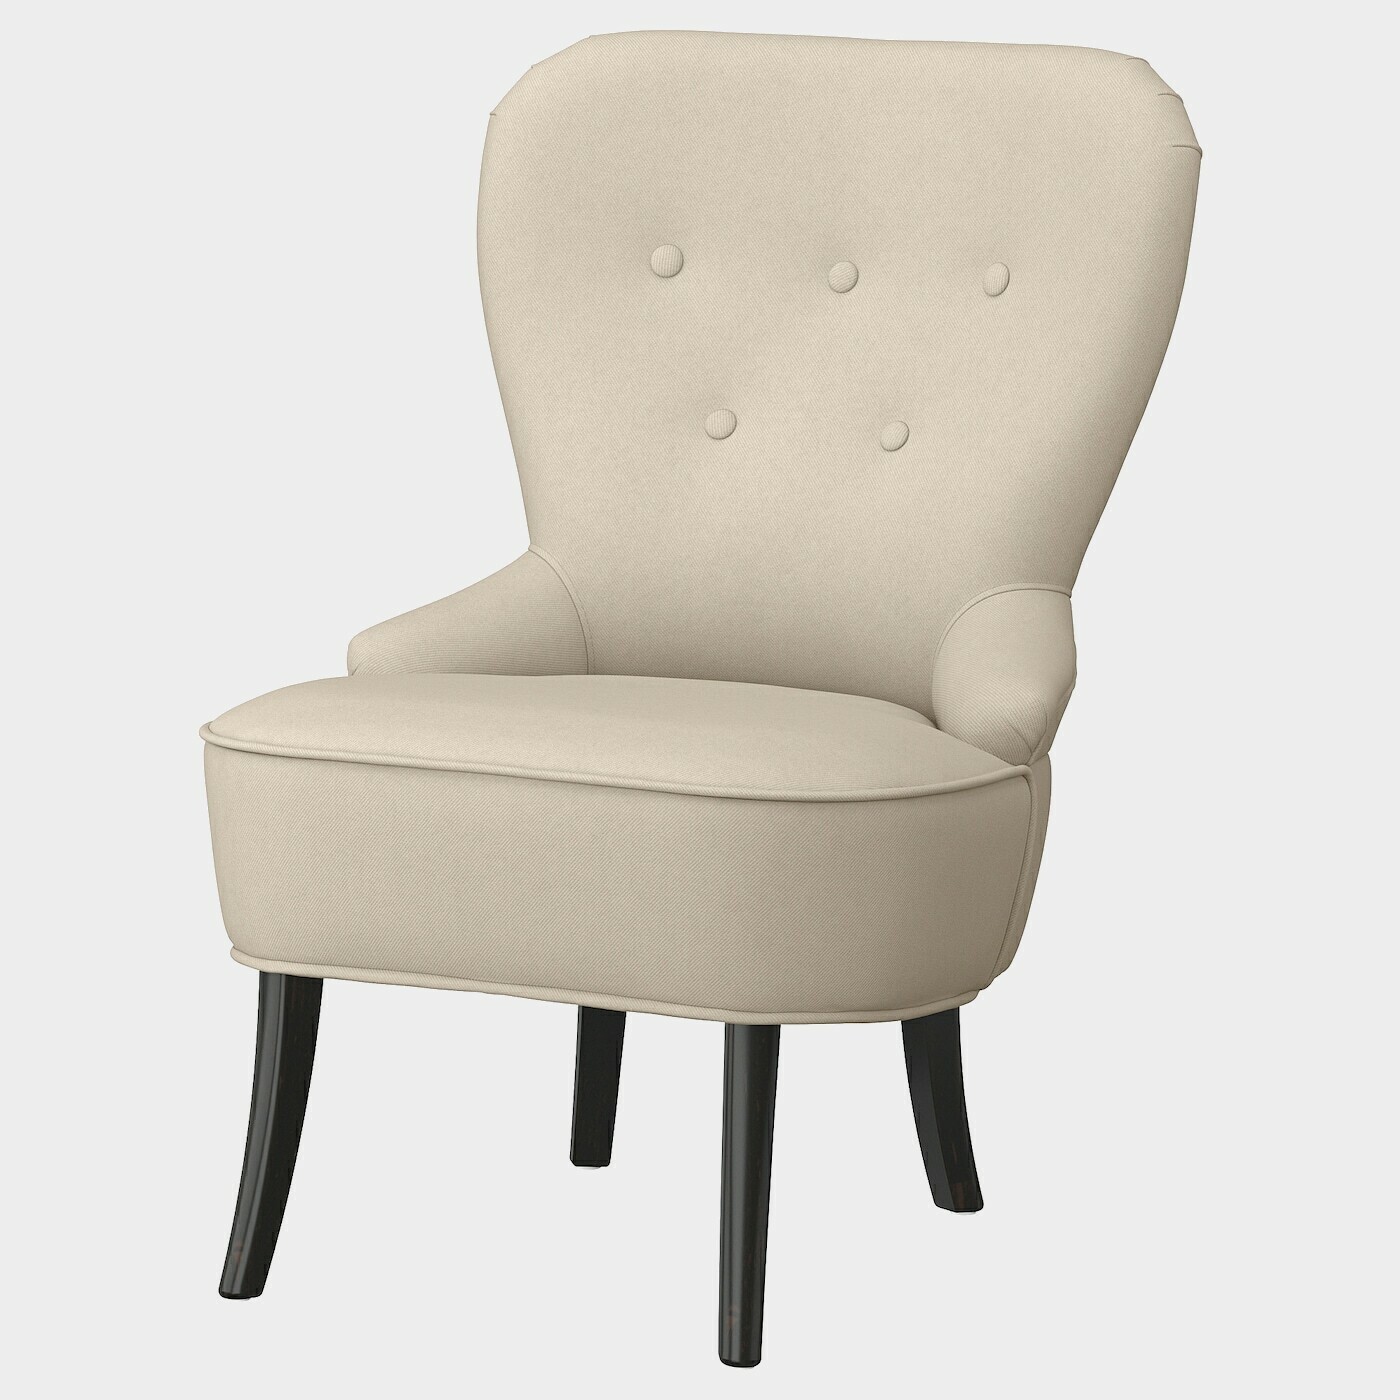 REMSTA Sessel  -  - Möbel Ideen für dein Zuhause von Home Trends. Möbel Trends von Social Media Influencer für dein Skandi Zuhause.